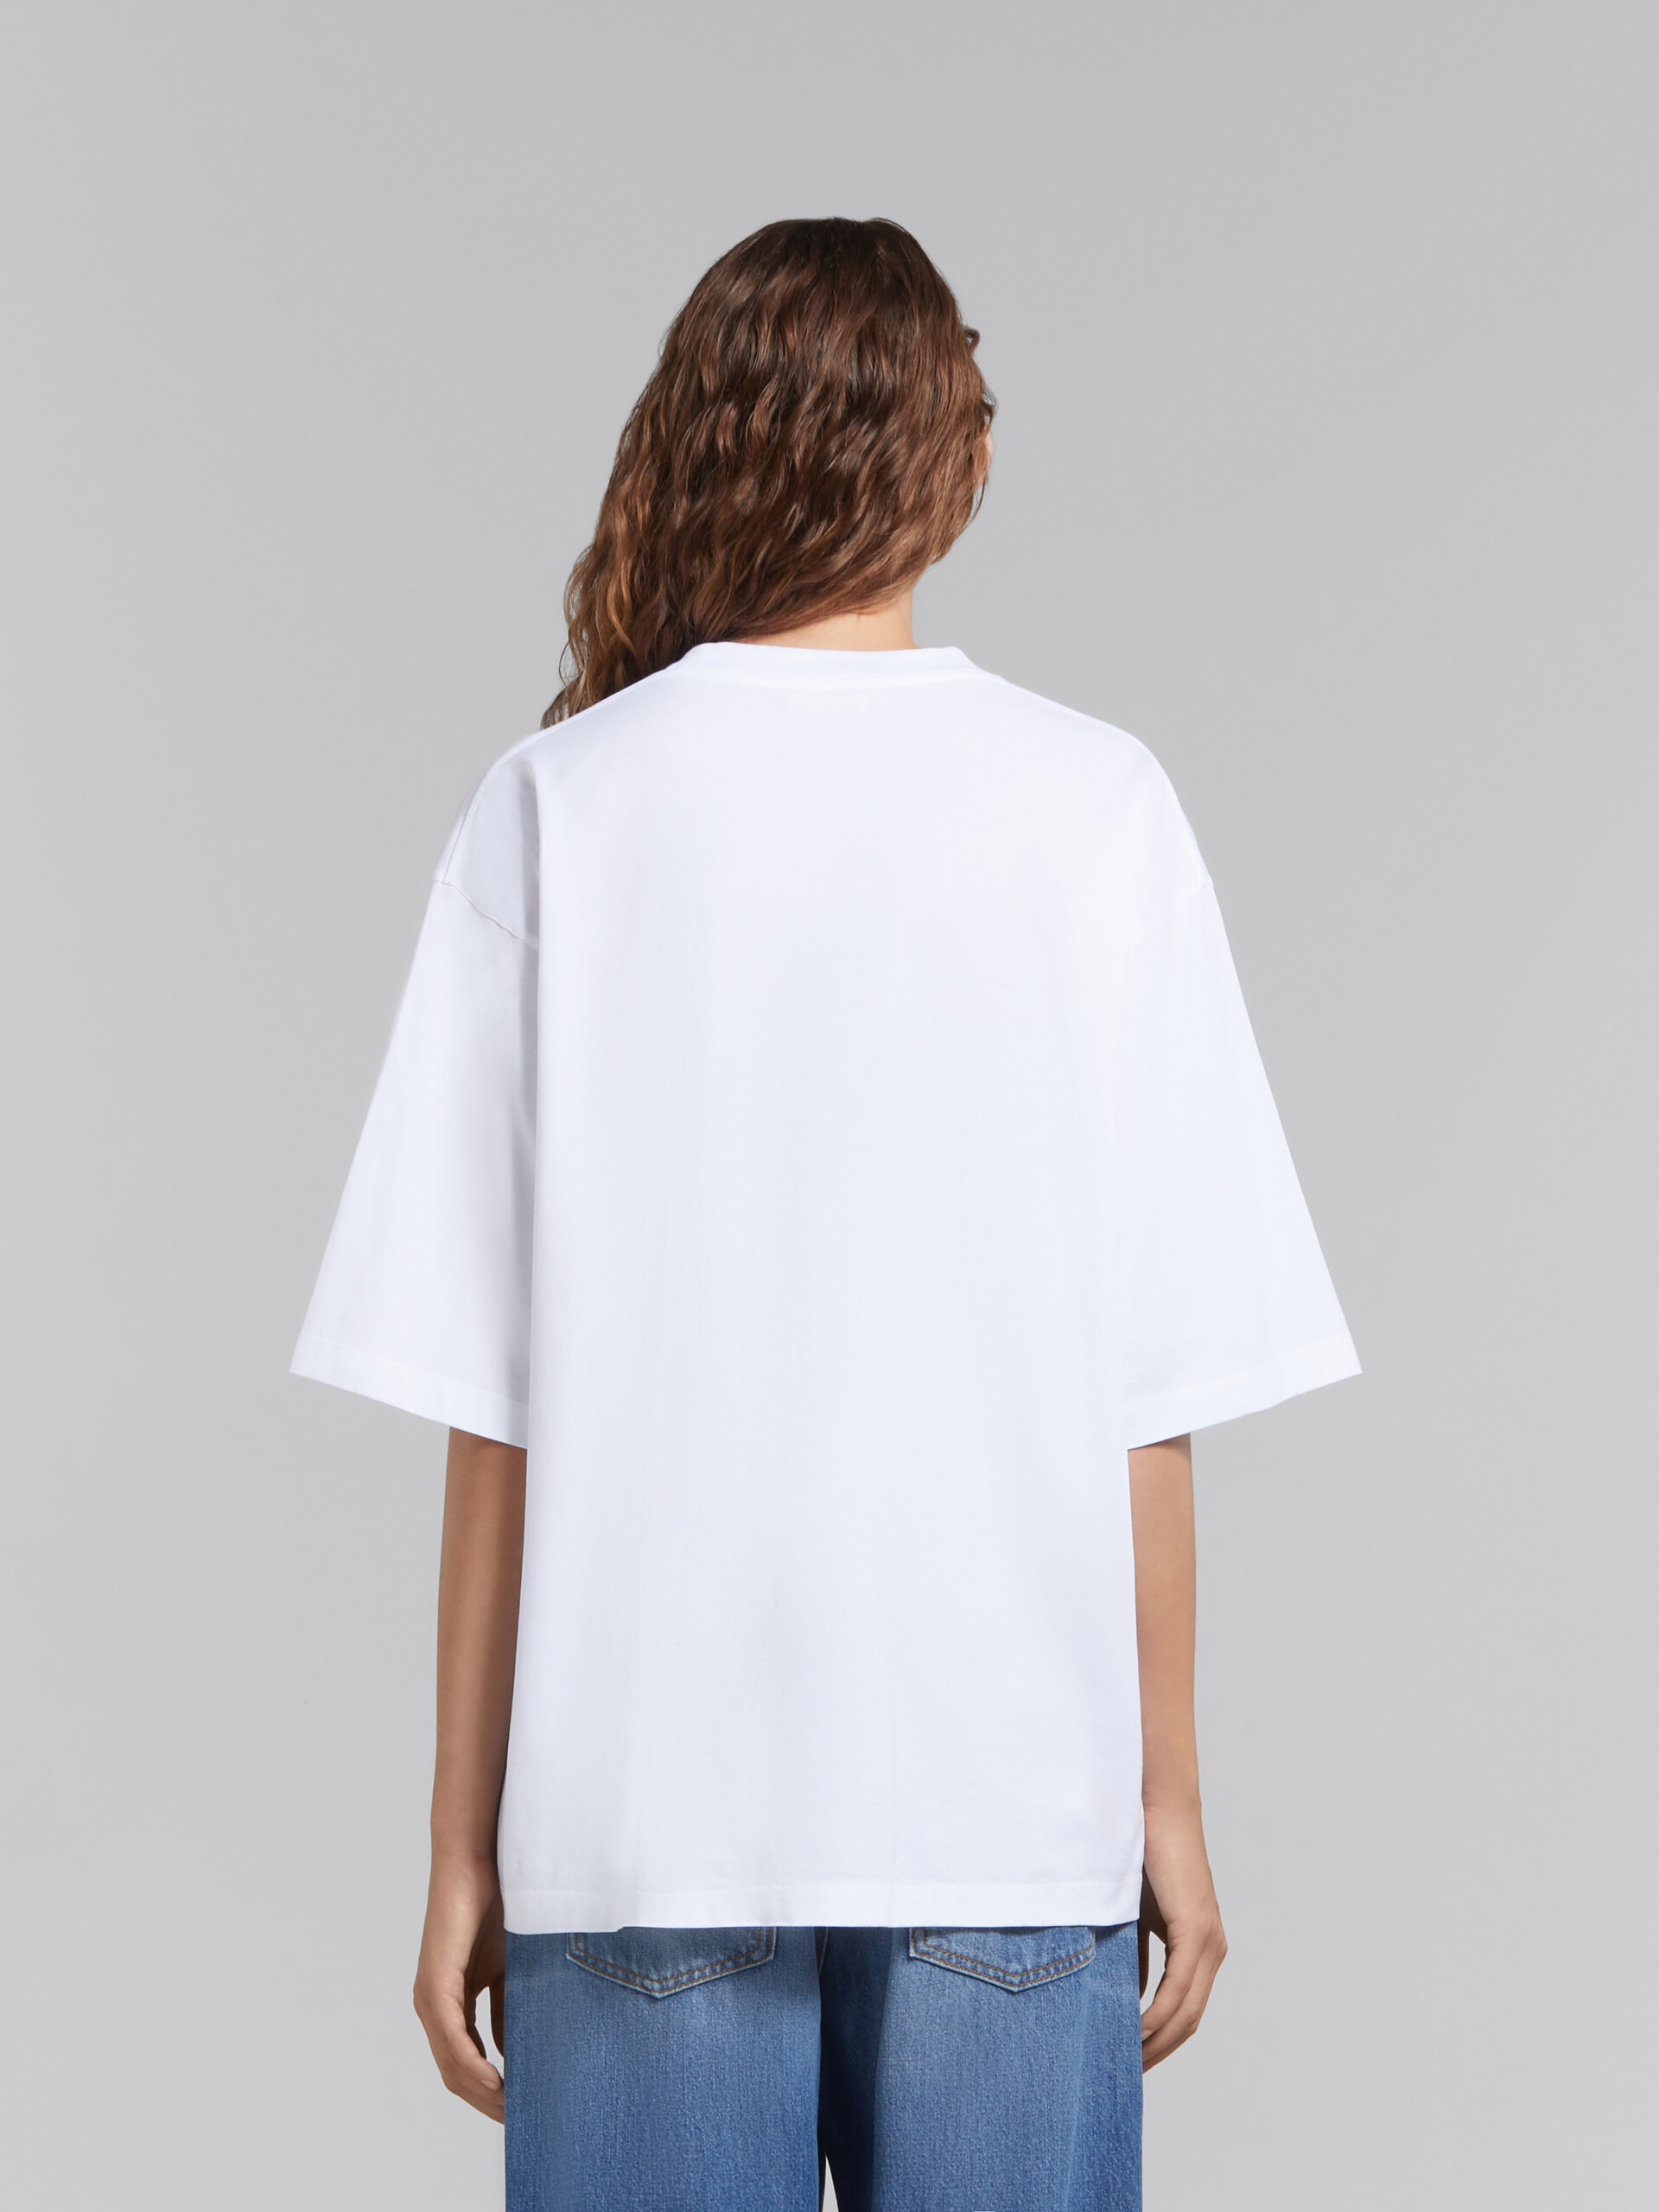 ホワイト ウェービーロゴ オーガニックコットン製Tシャツ - Tシャツ - Image 3